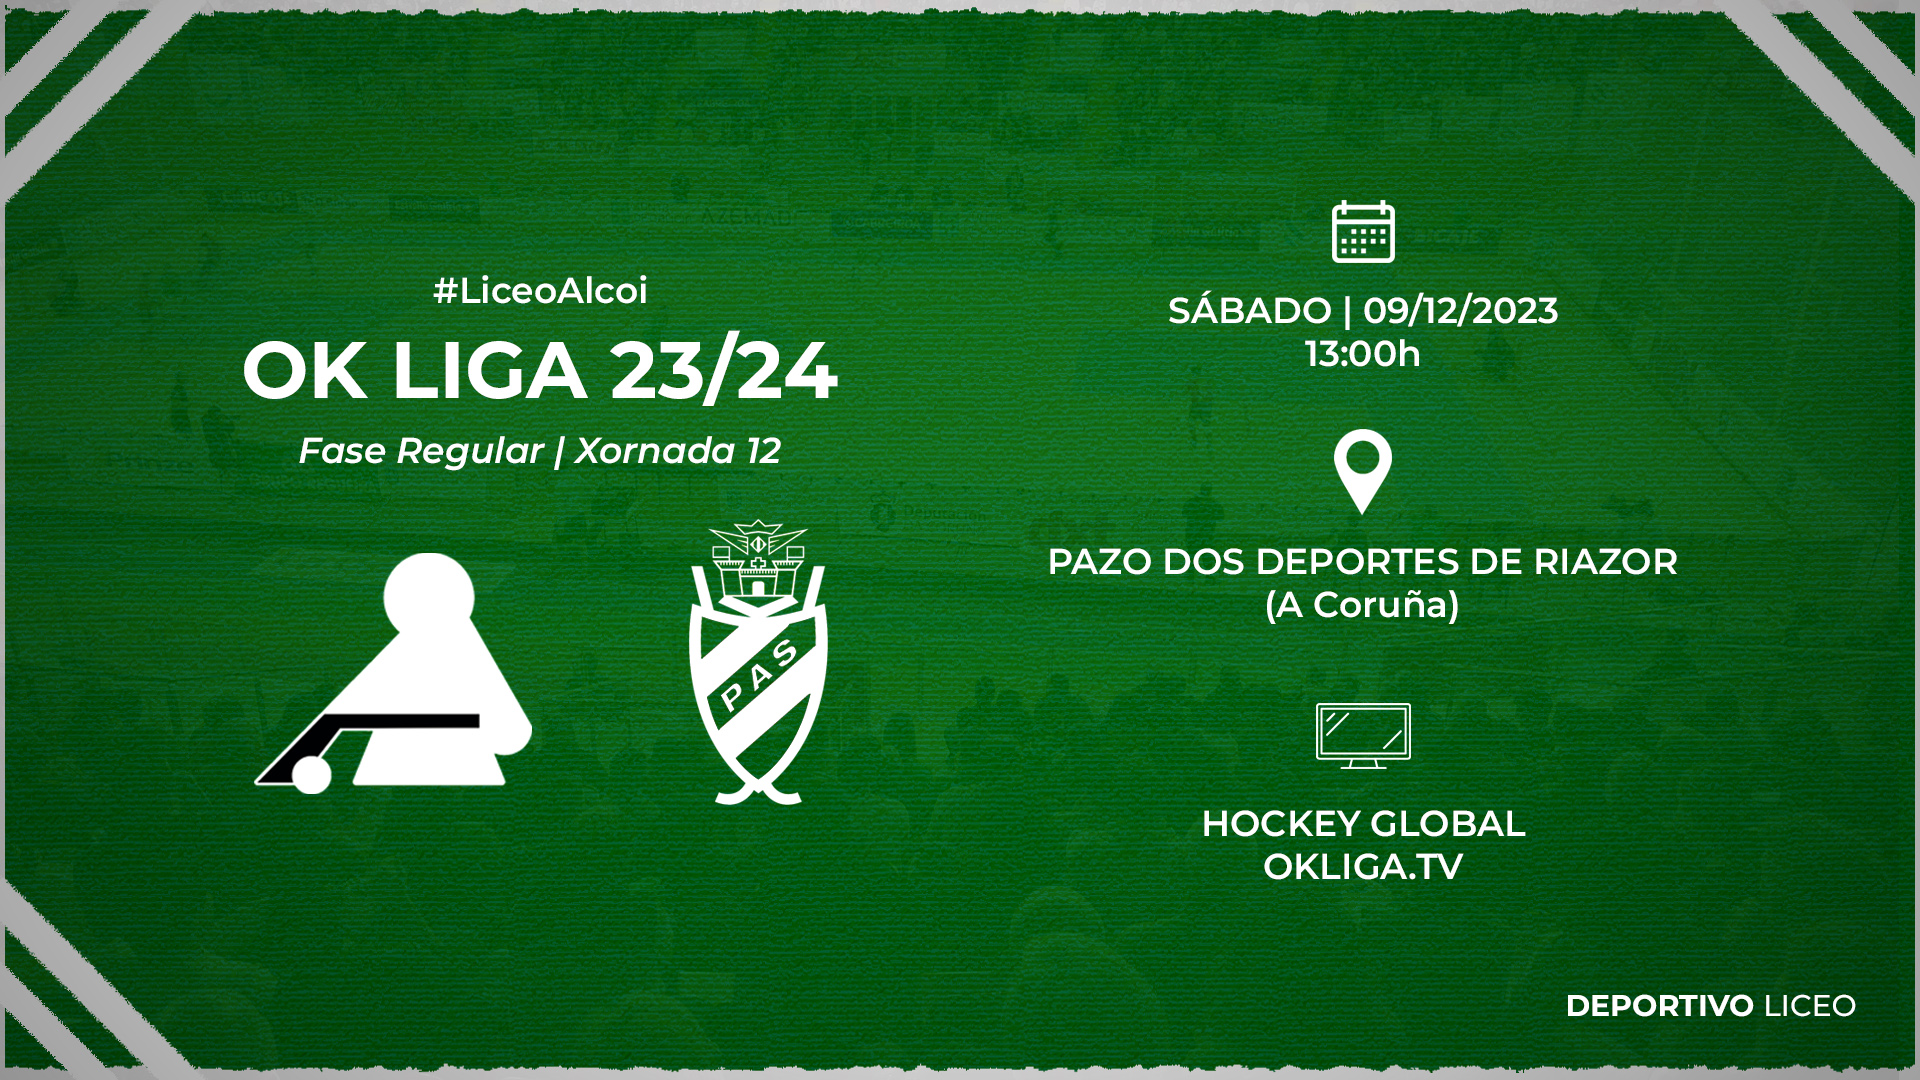 #LiceoAlcoi | ENTRADAS para a xornada 12 da OK Liga 23/24